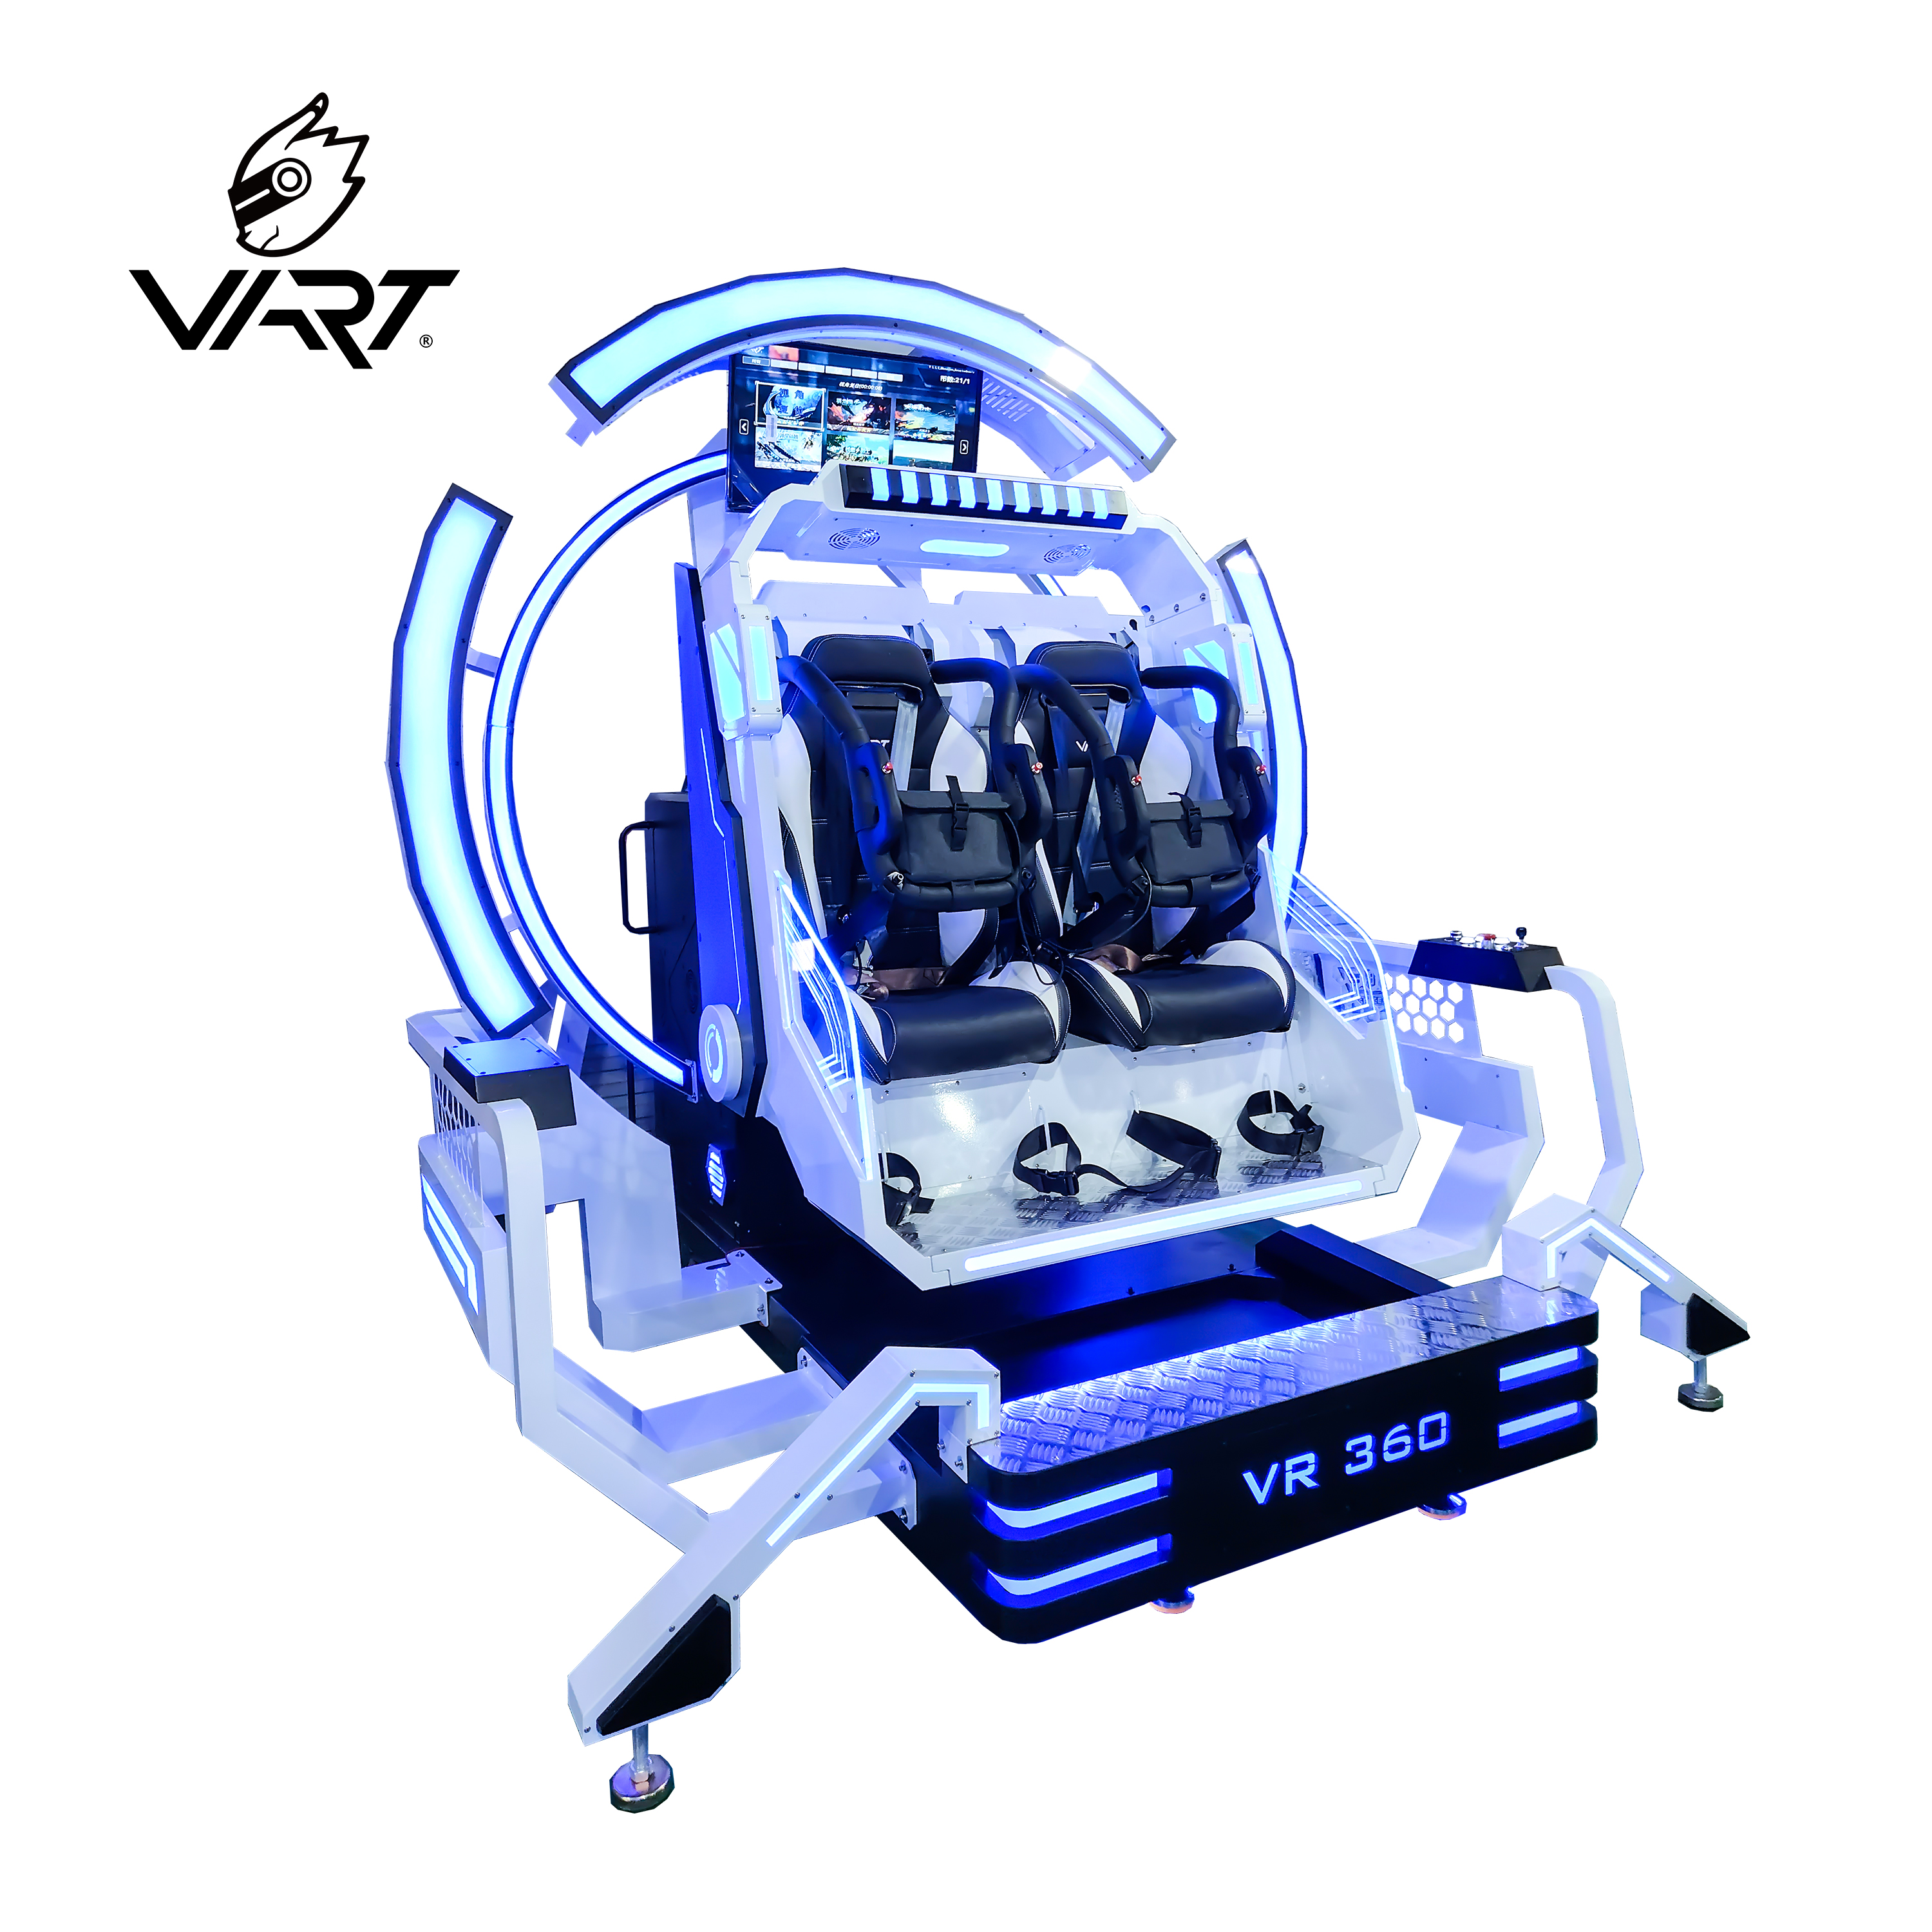 מחיר נמוך עבור 9d Vr 360 Degree Headtracking Roller Roller Simulator Plus Reality Virtual Vibration 9d Cinema תמונה מוצגת